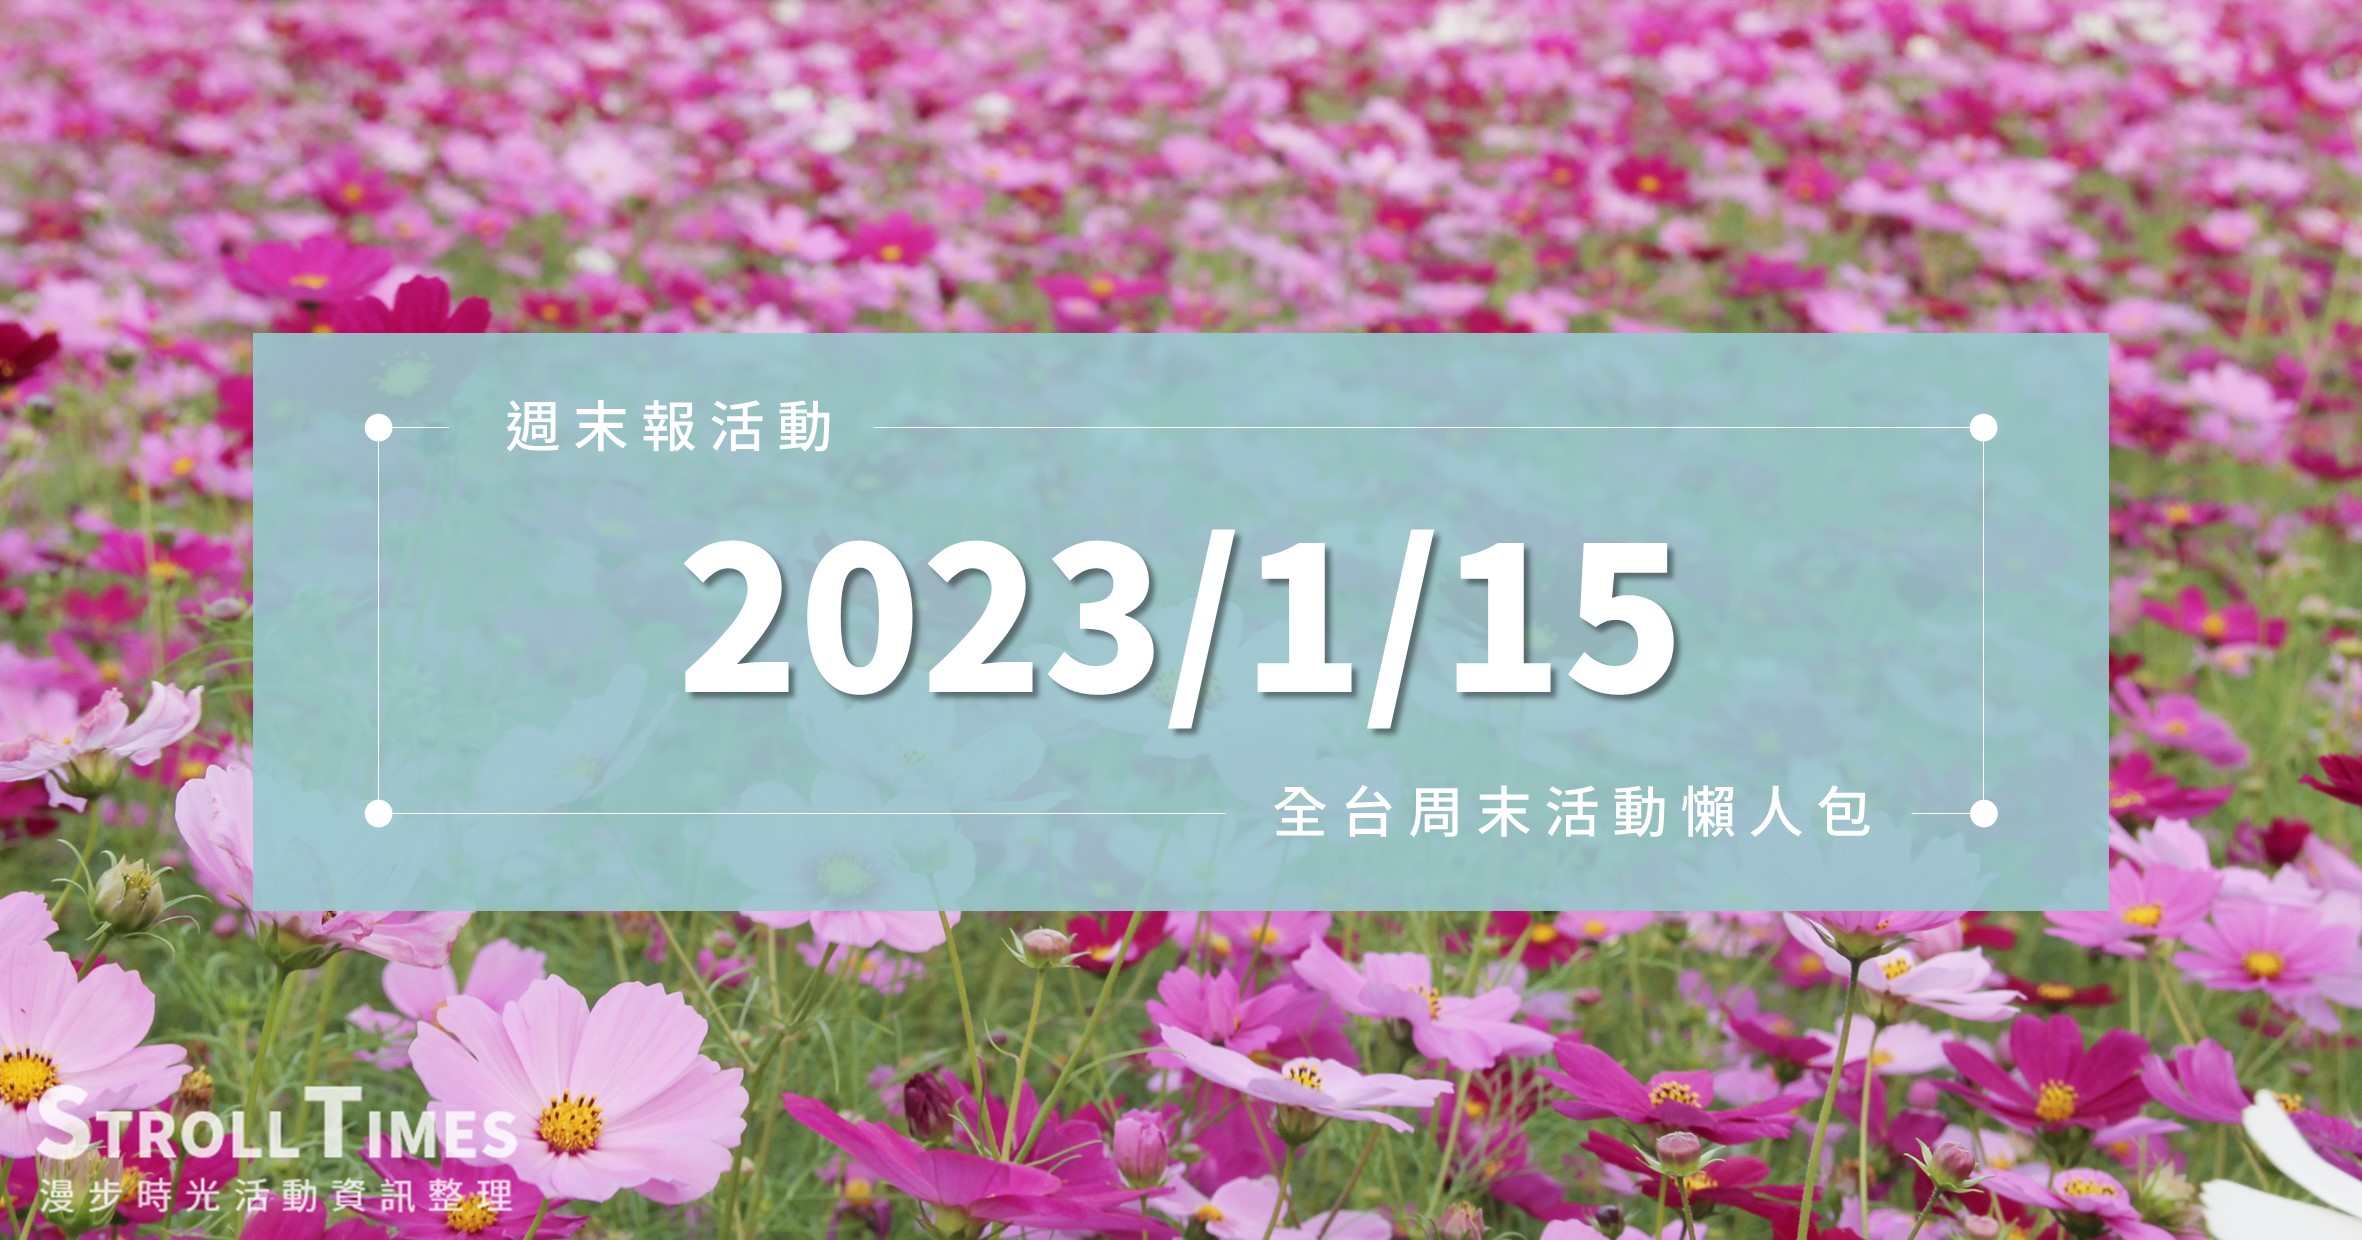 週末活動》全台「2023/1/15」週日活動整理 @漫步時光